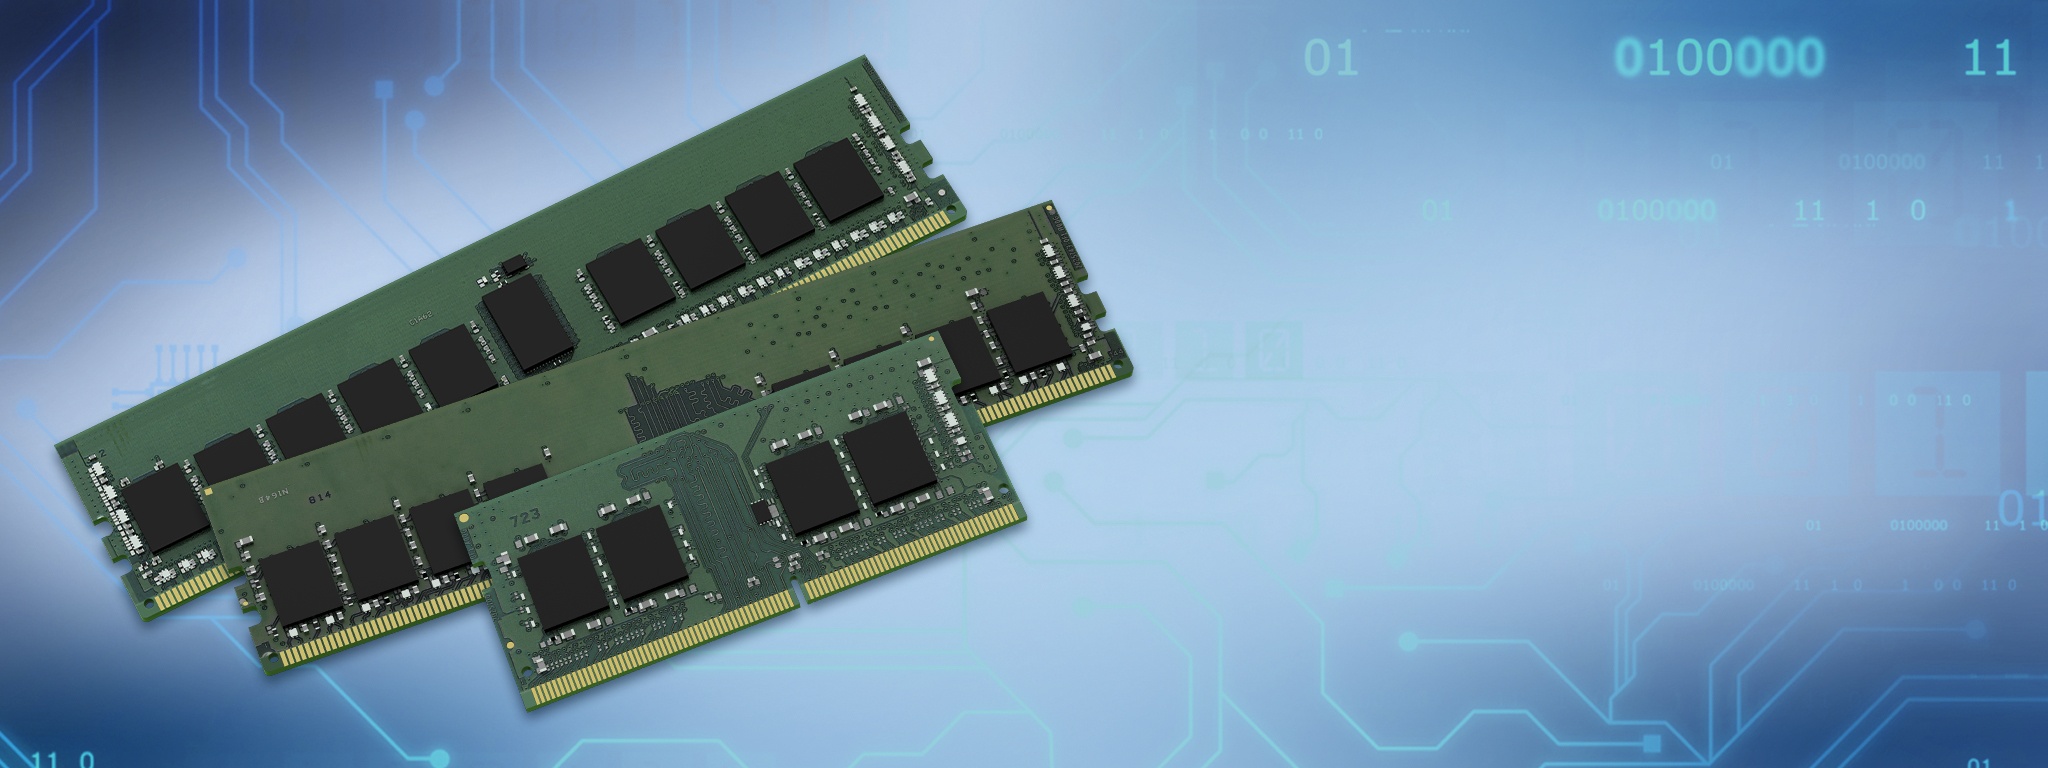 Модули памяти 16 Гбит для серверов, настольных систем и ноутбуков поверх изображения дорожек и микросхем печатной платы